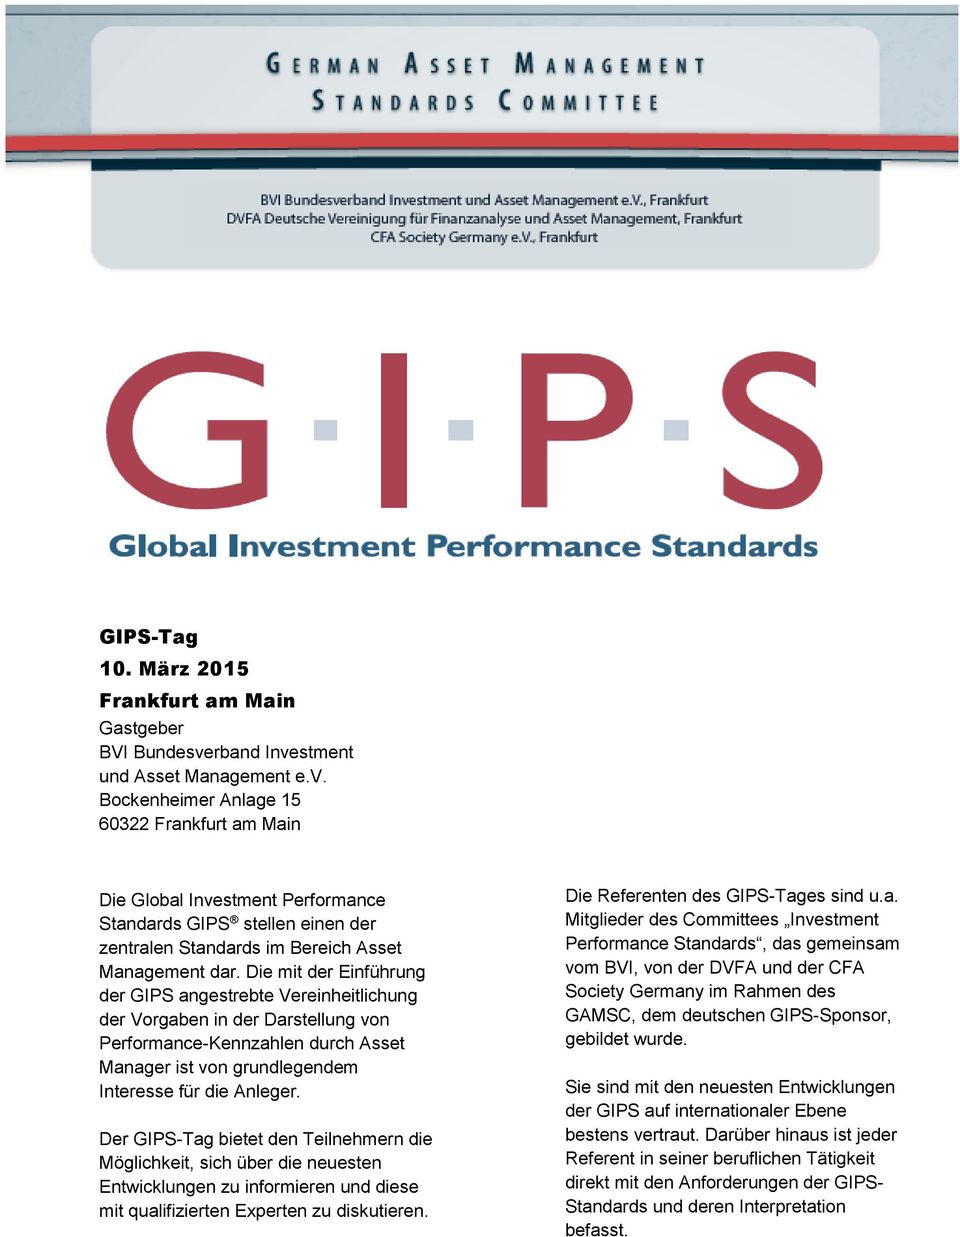 Die mit der Einführung der GIPS angestrebte Vereinheitlichung der Vorgaben in der Darstellung von Performance-Kennzahlen durch Asset Manager ist von grundlegendem Interesse für die Anleger.